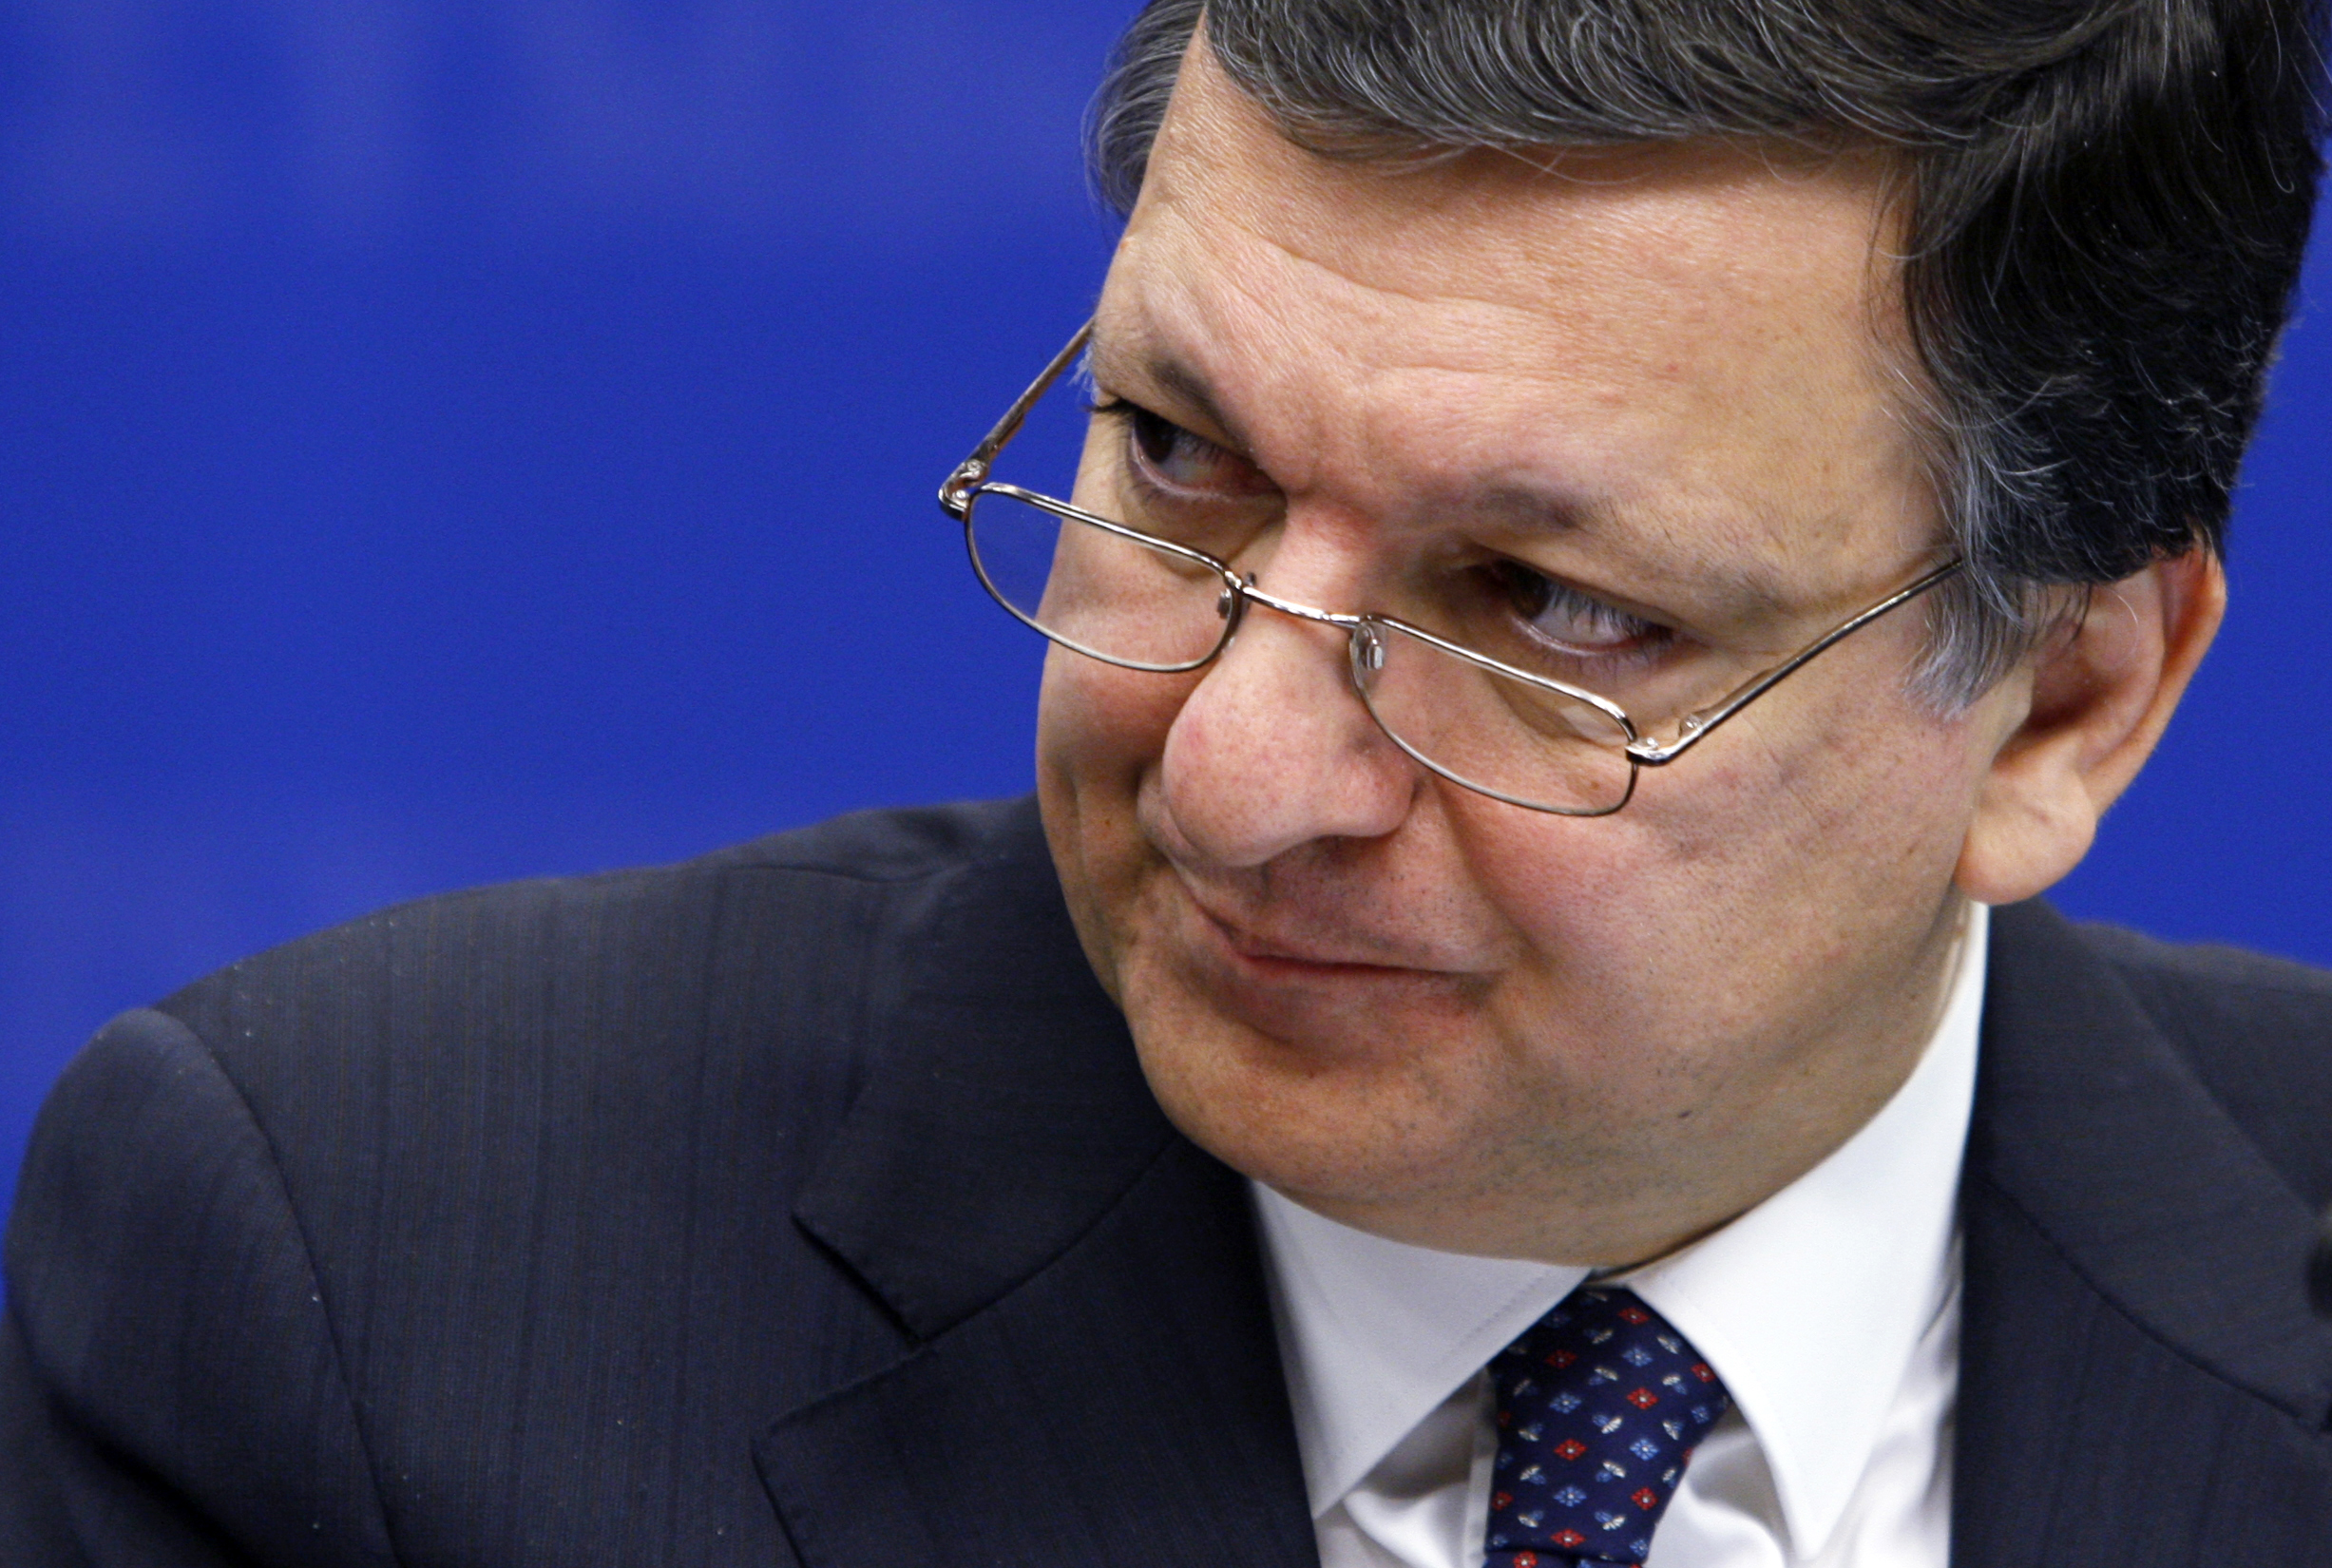 London kvótát állapítana meg az EU-bevándorlásra, Barroso szerint ez törvénysértő lenne